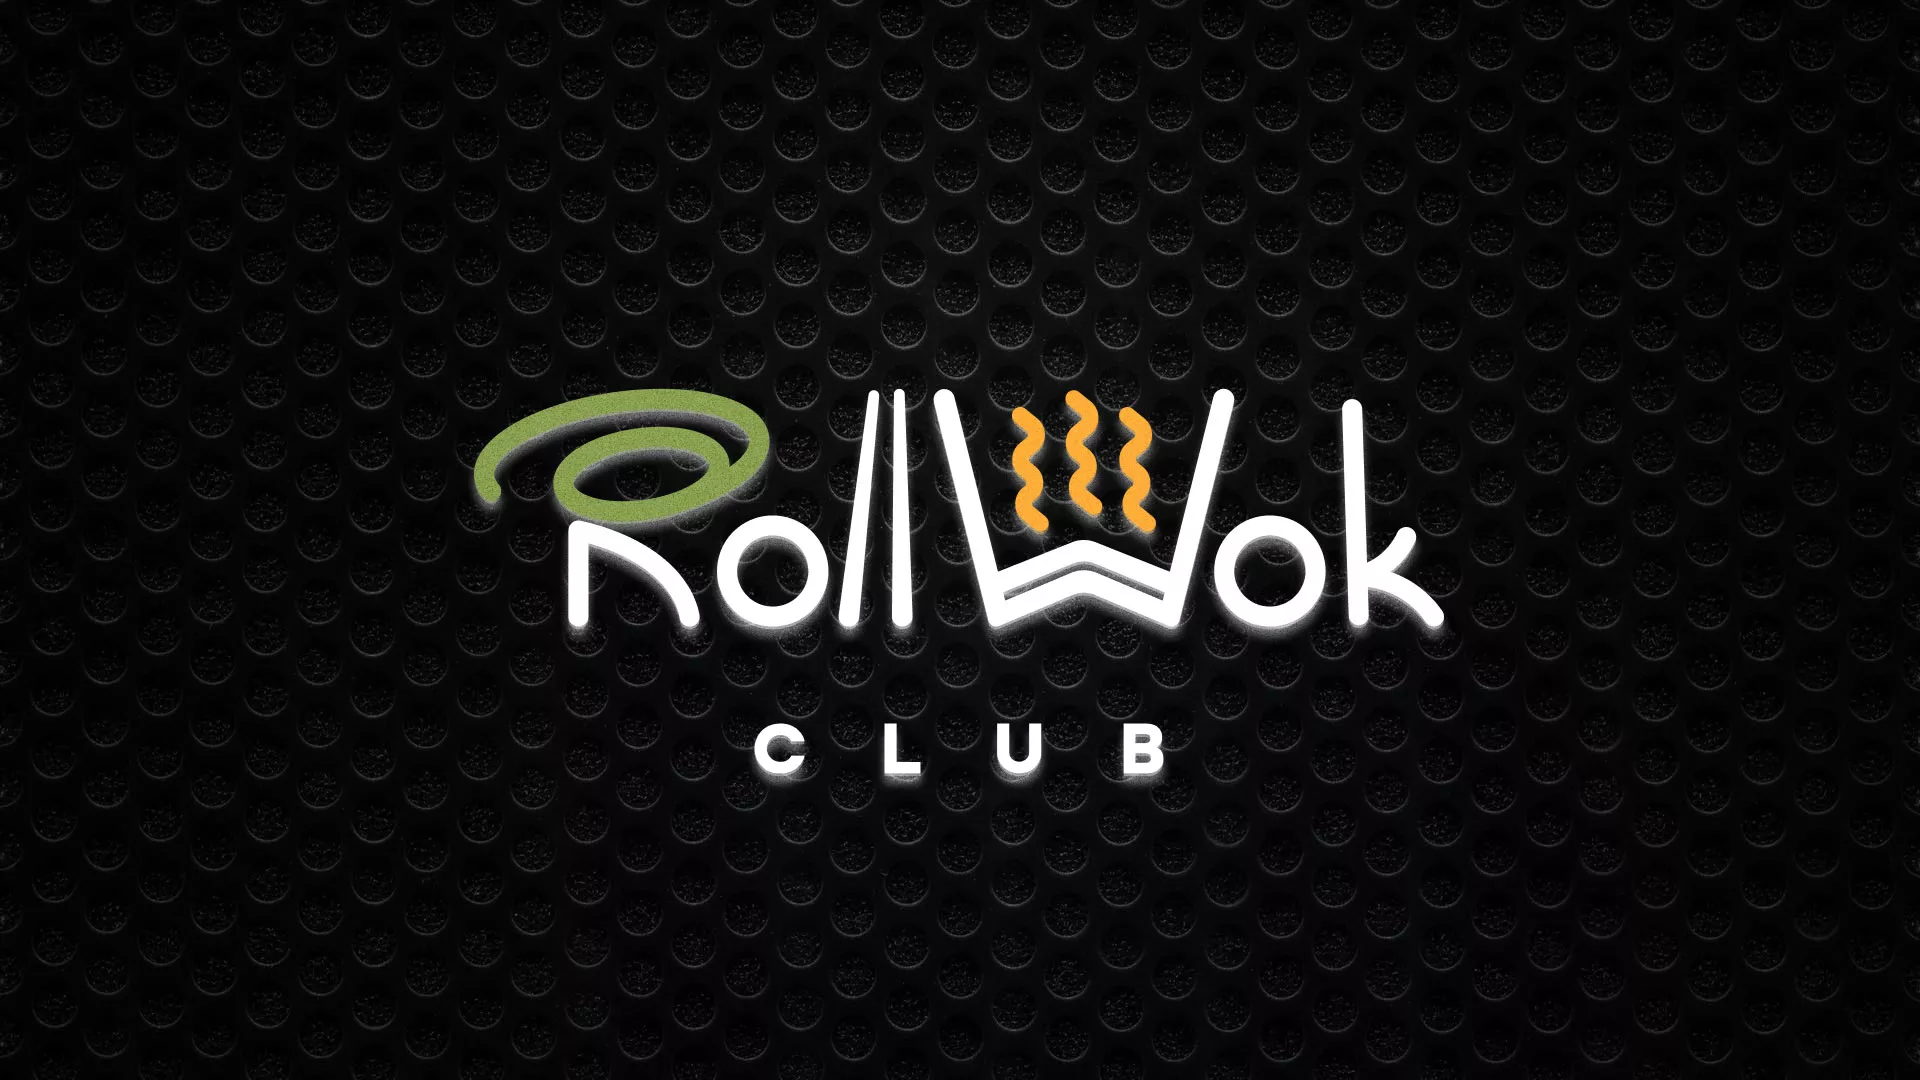 Брендирование торговых точек суши-бара «Roll Wok Club» в Белёве